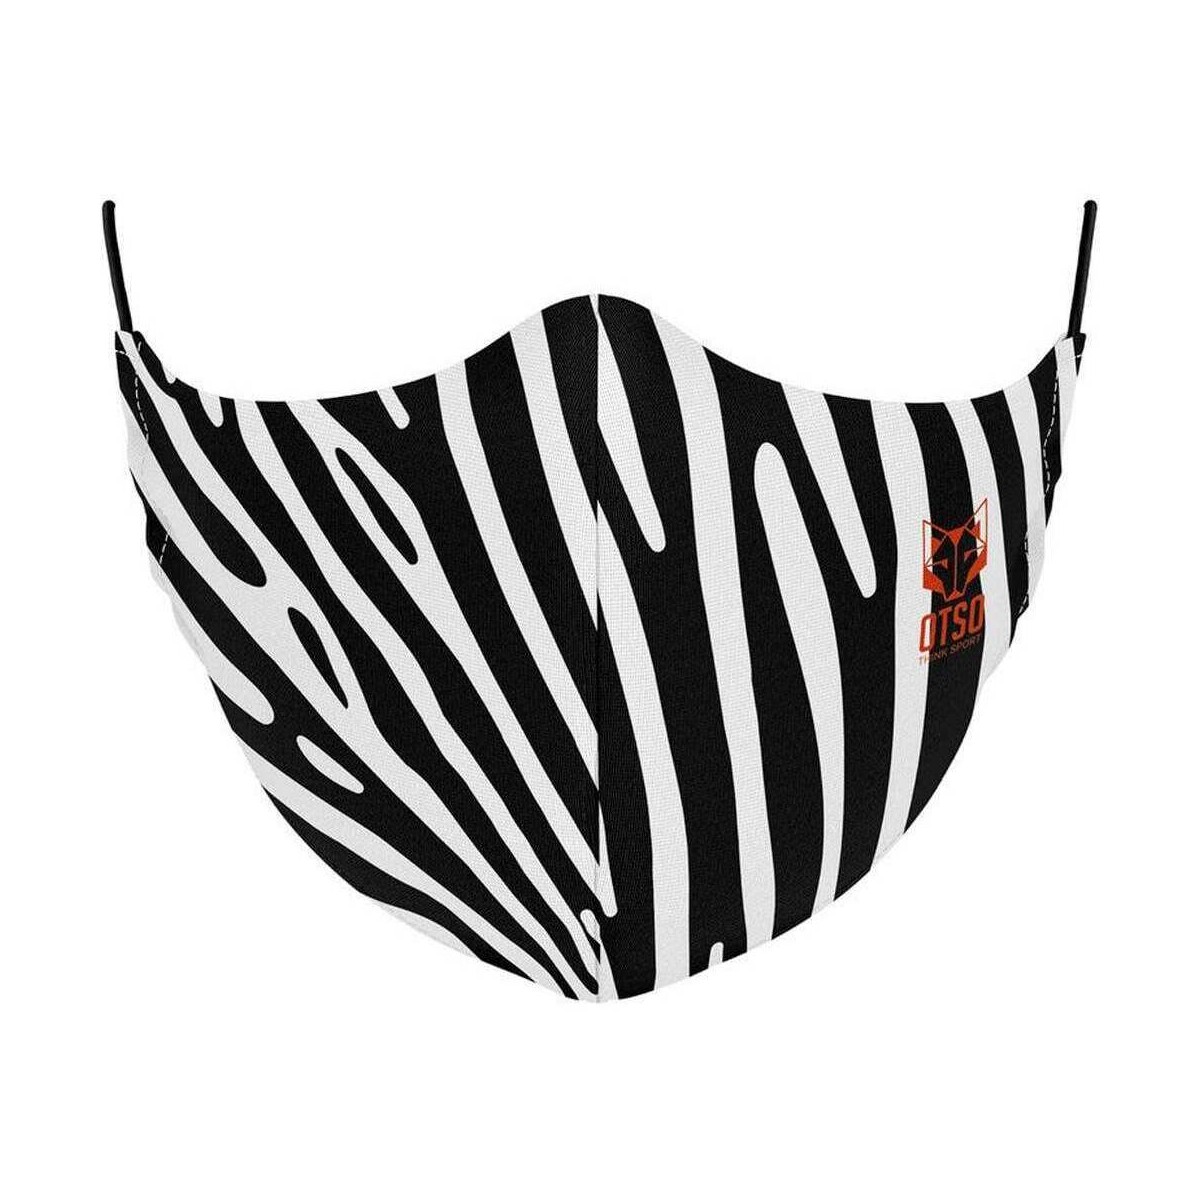 Accesorios textil Mascarilla Otso Mask Animals Zebra Multicolor